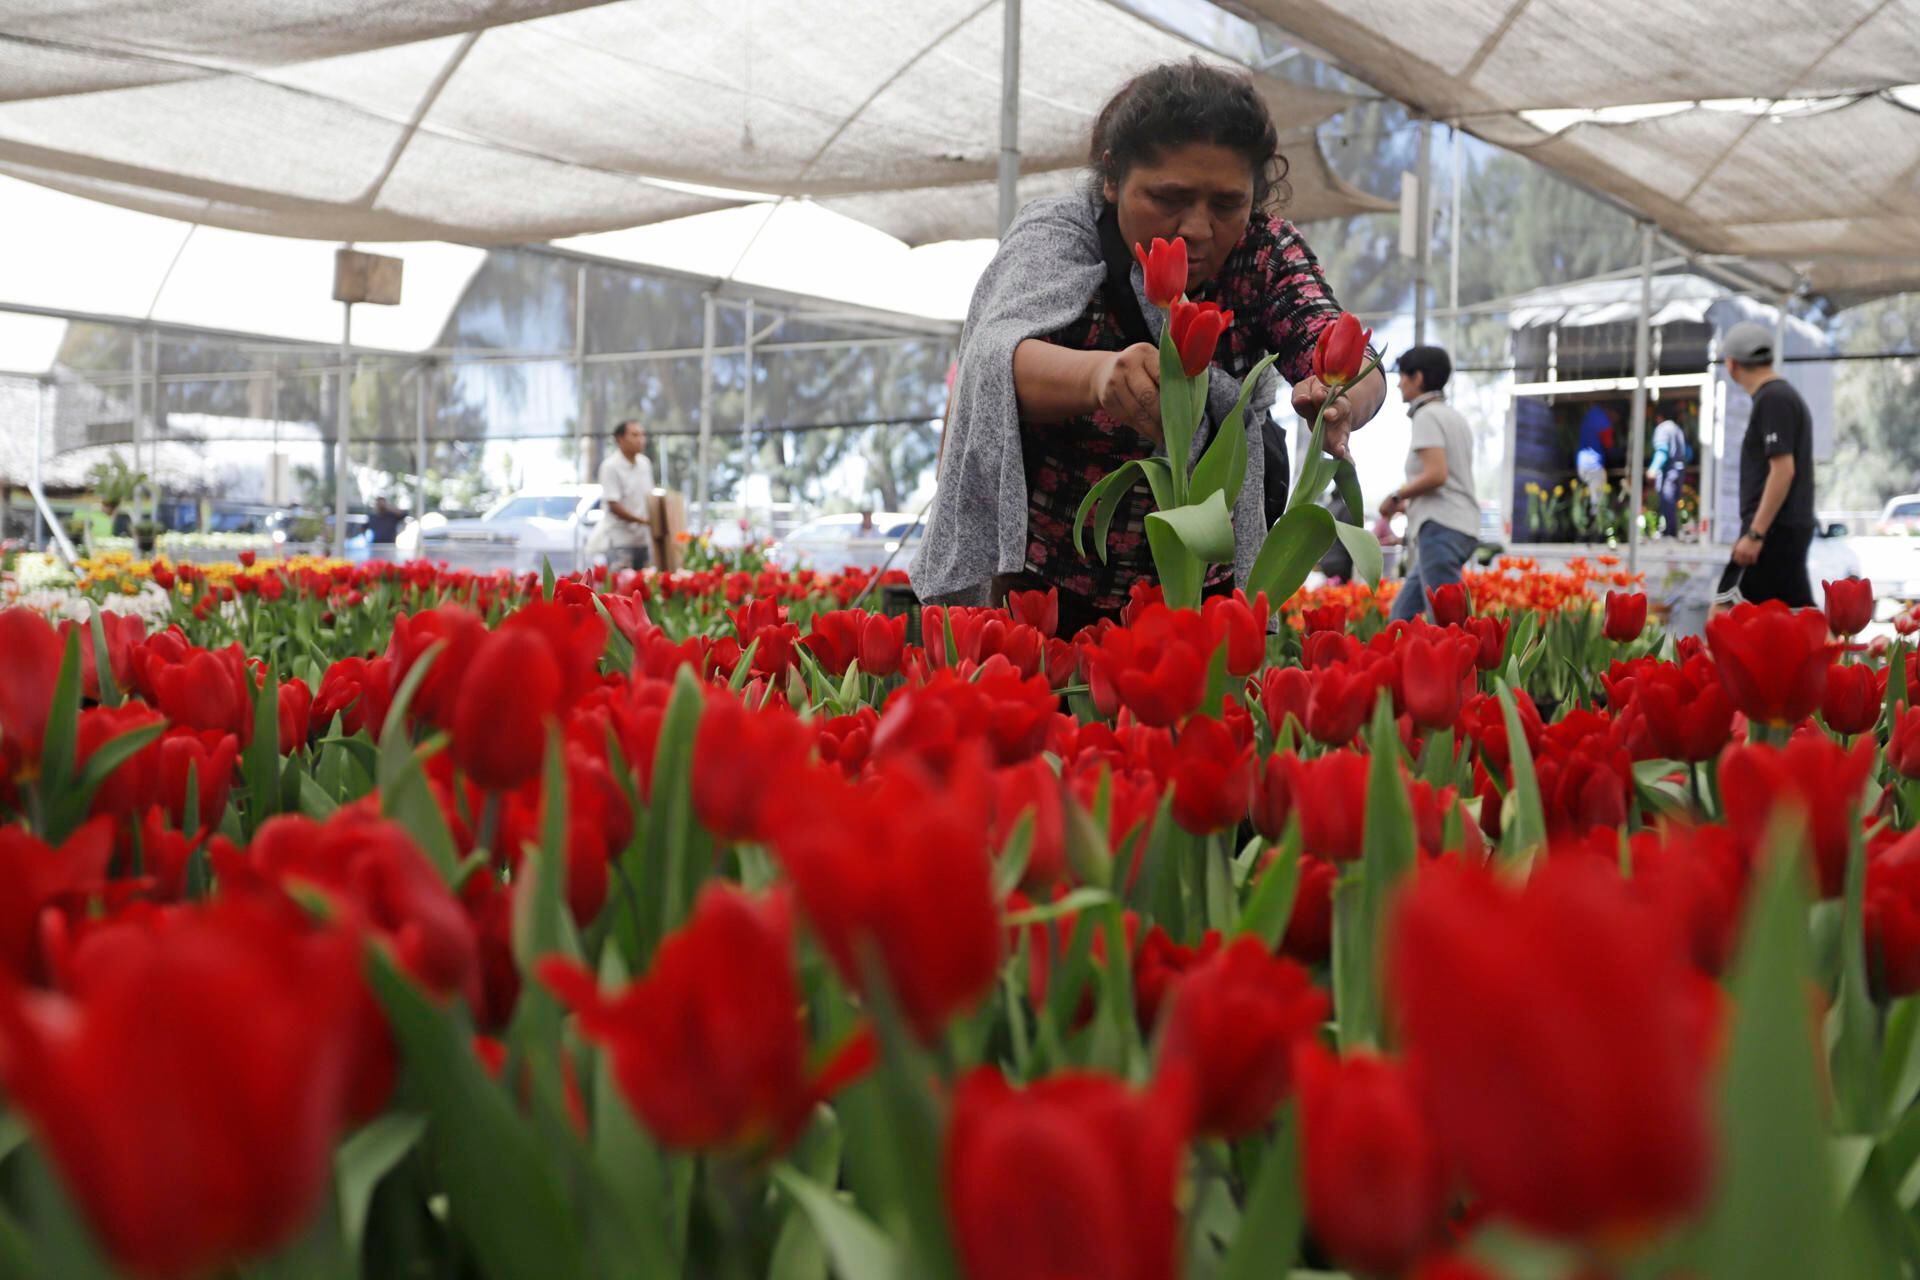 Vendedores ofrecen tulipanes rojos y de otros colores previo al Día de San Valentín, en Atlixco.